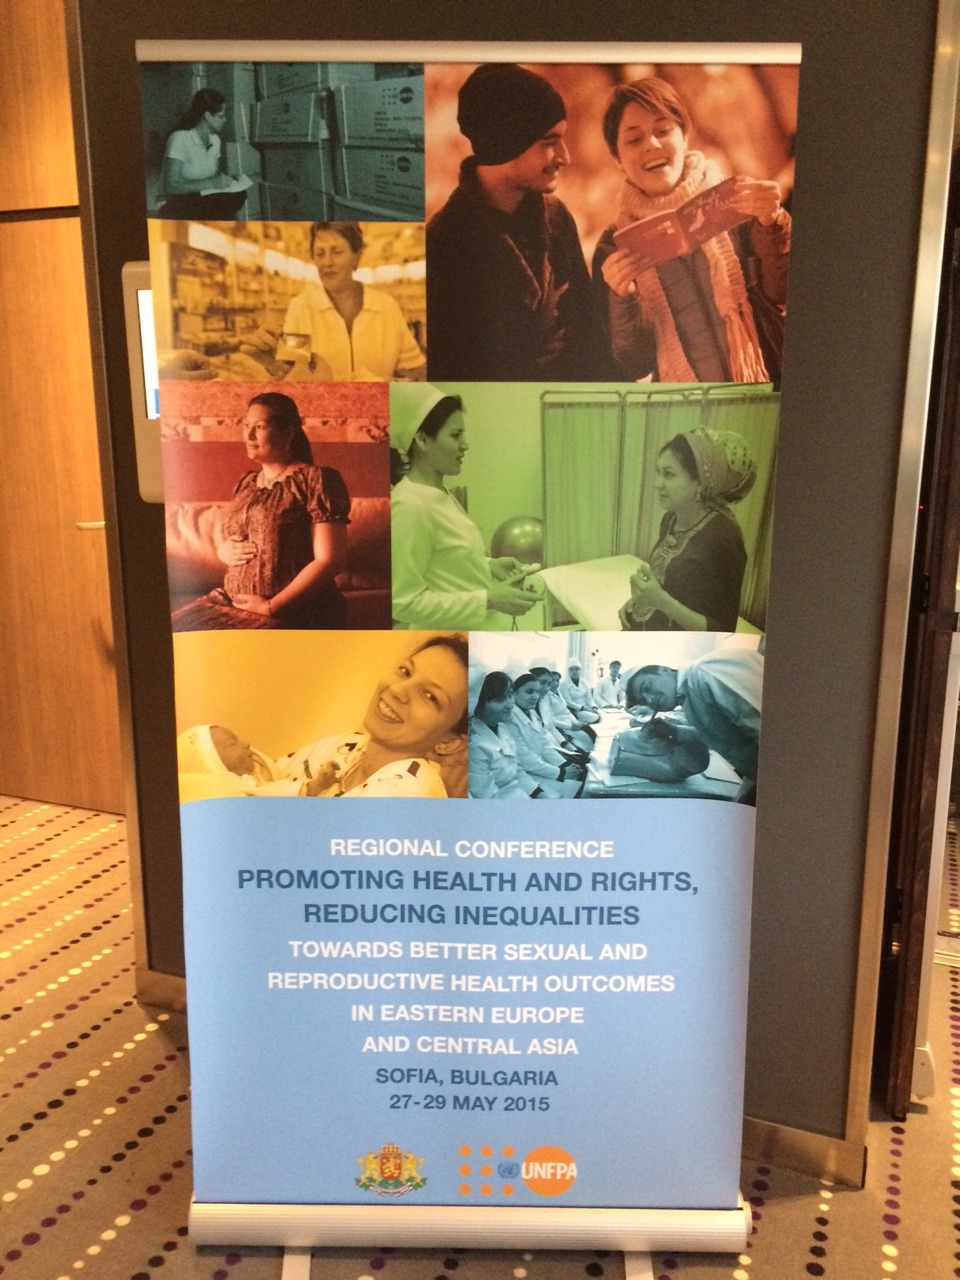 ЕКОМ принял участие в региональной конференции по вопросам сексуального и репродуктивного здоровья и прав в ВЕЦА